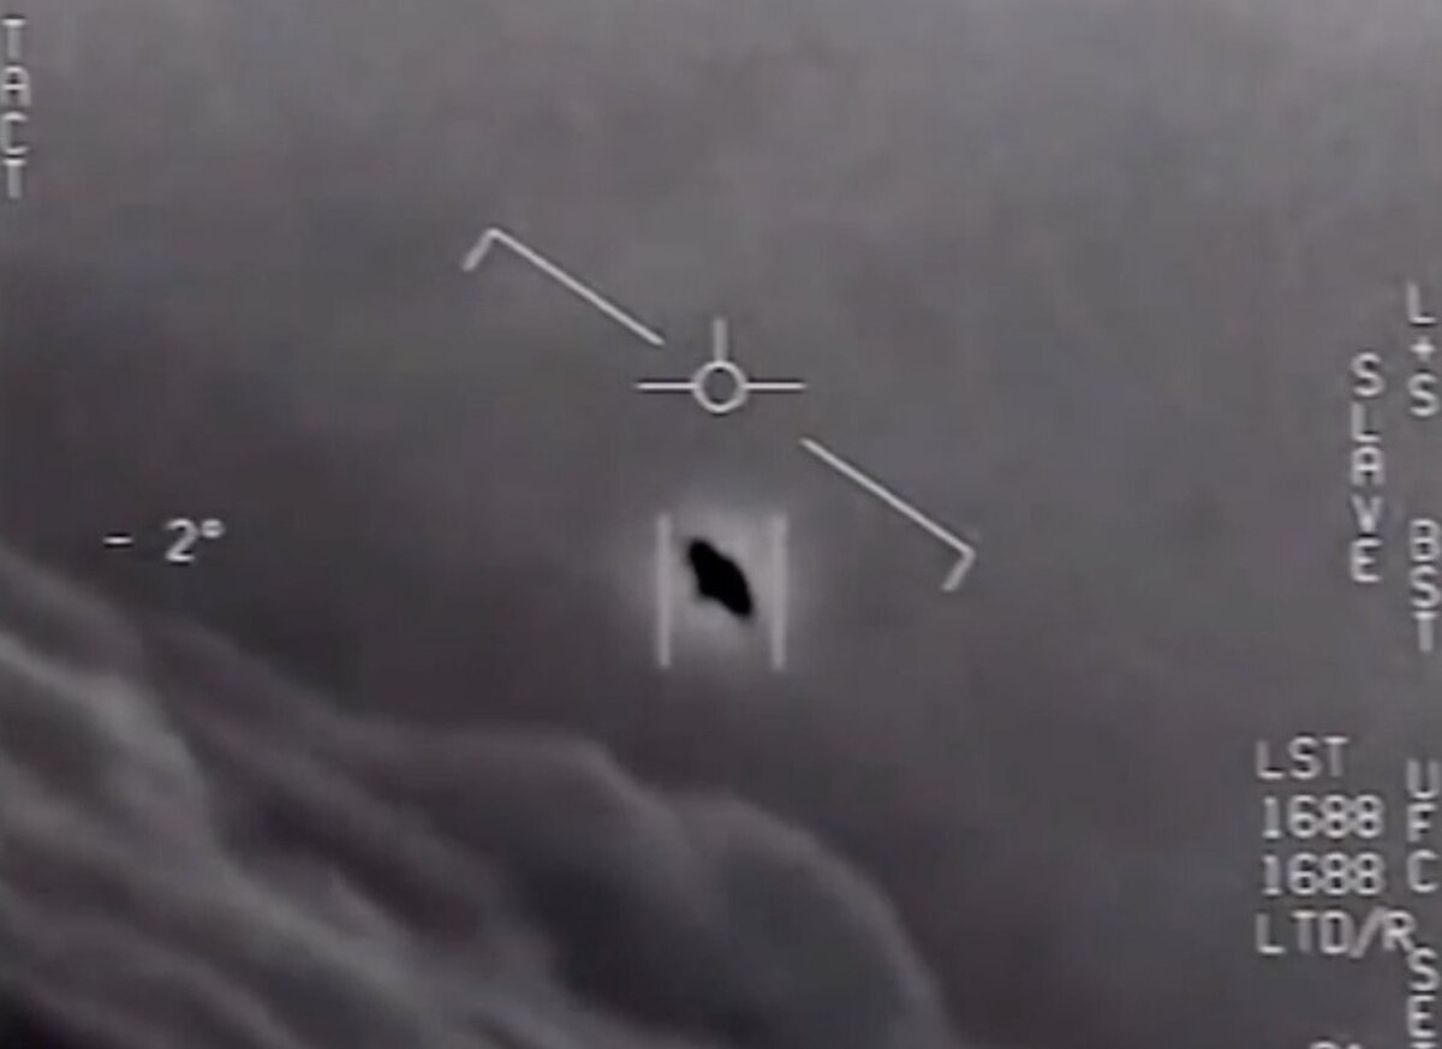 USA piloodid nägid 2004 San Diego lähedal Vaikse ookeani kohal tundmatut lendavat objekti